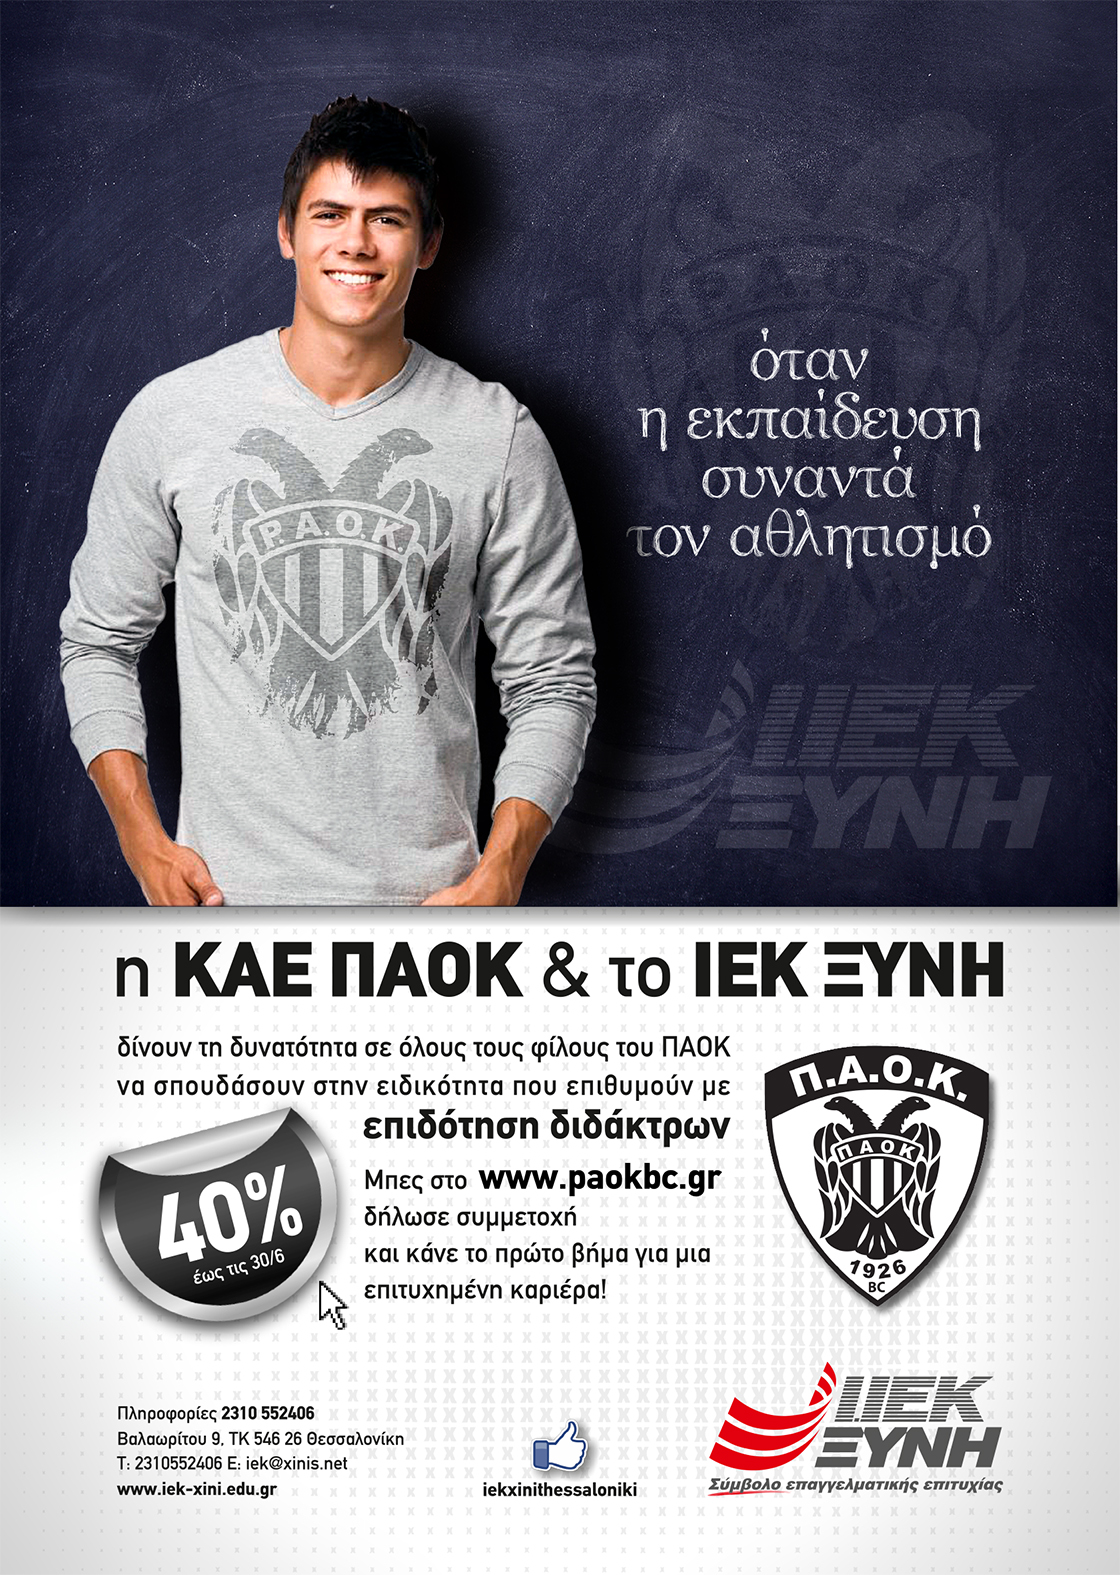 Η ΚΑΕ ΠΑΟΚ & το ΙΕΚ ΞΥΝΗ Μακεδονίας στηρίζουν τους νέους!